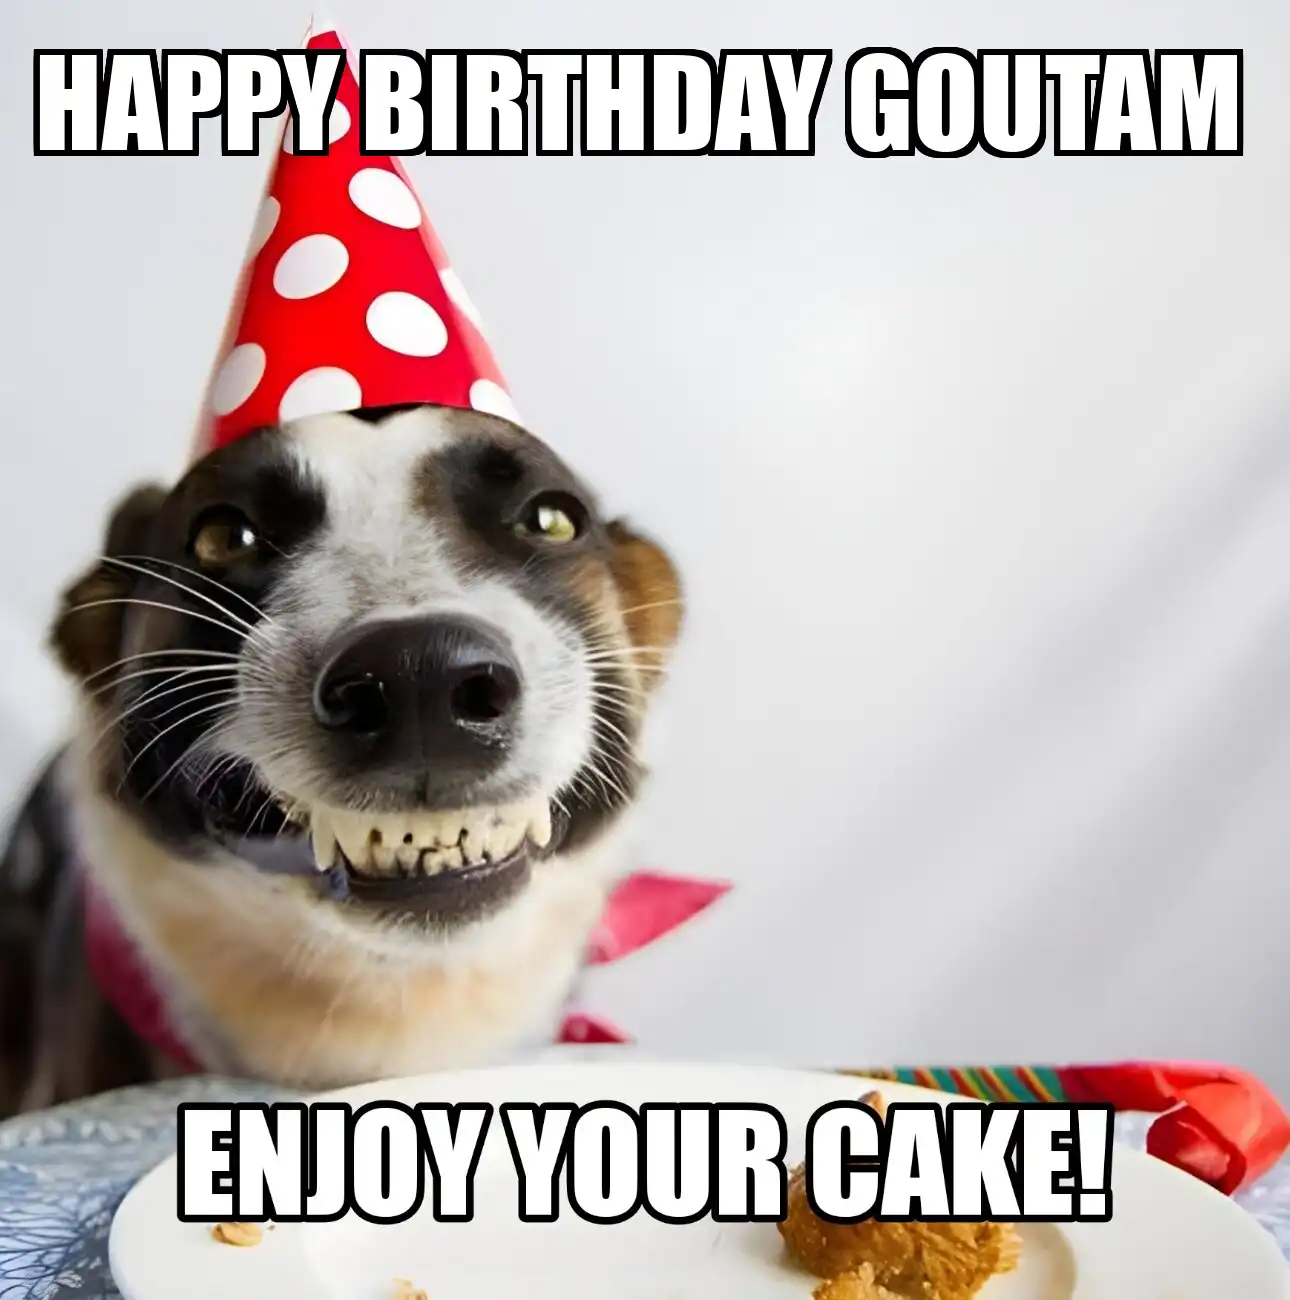 Happy Birthday Goutam Enjoy Your Cake Dog Meme